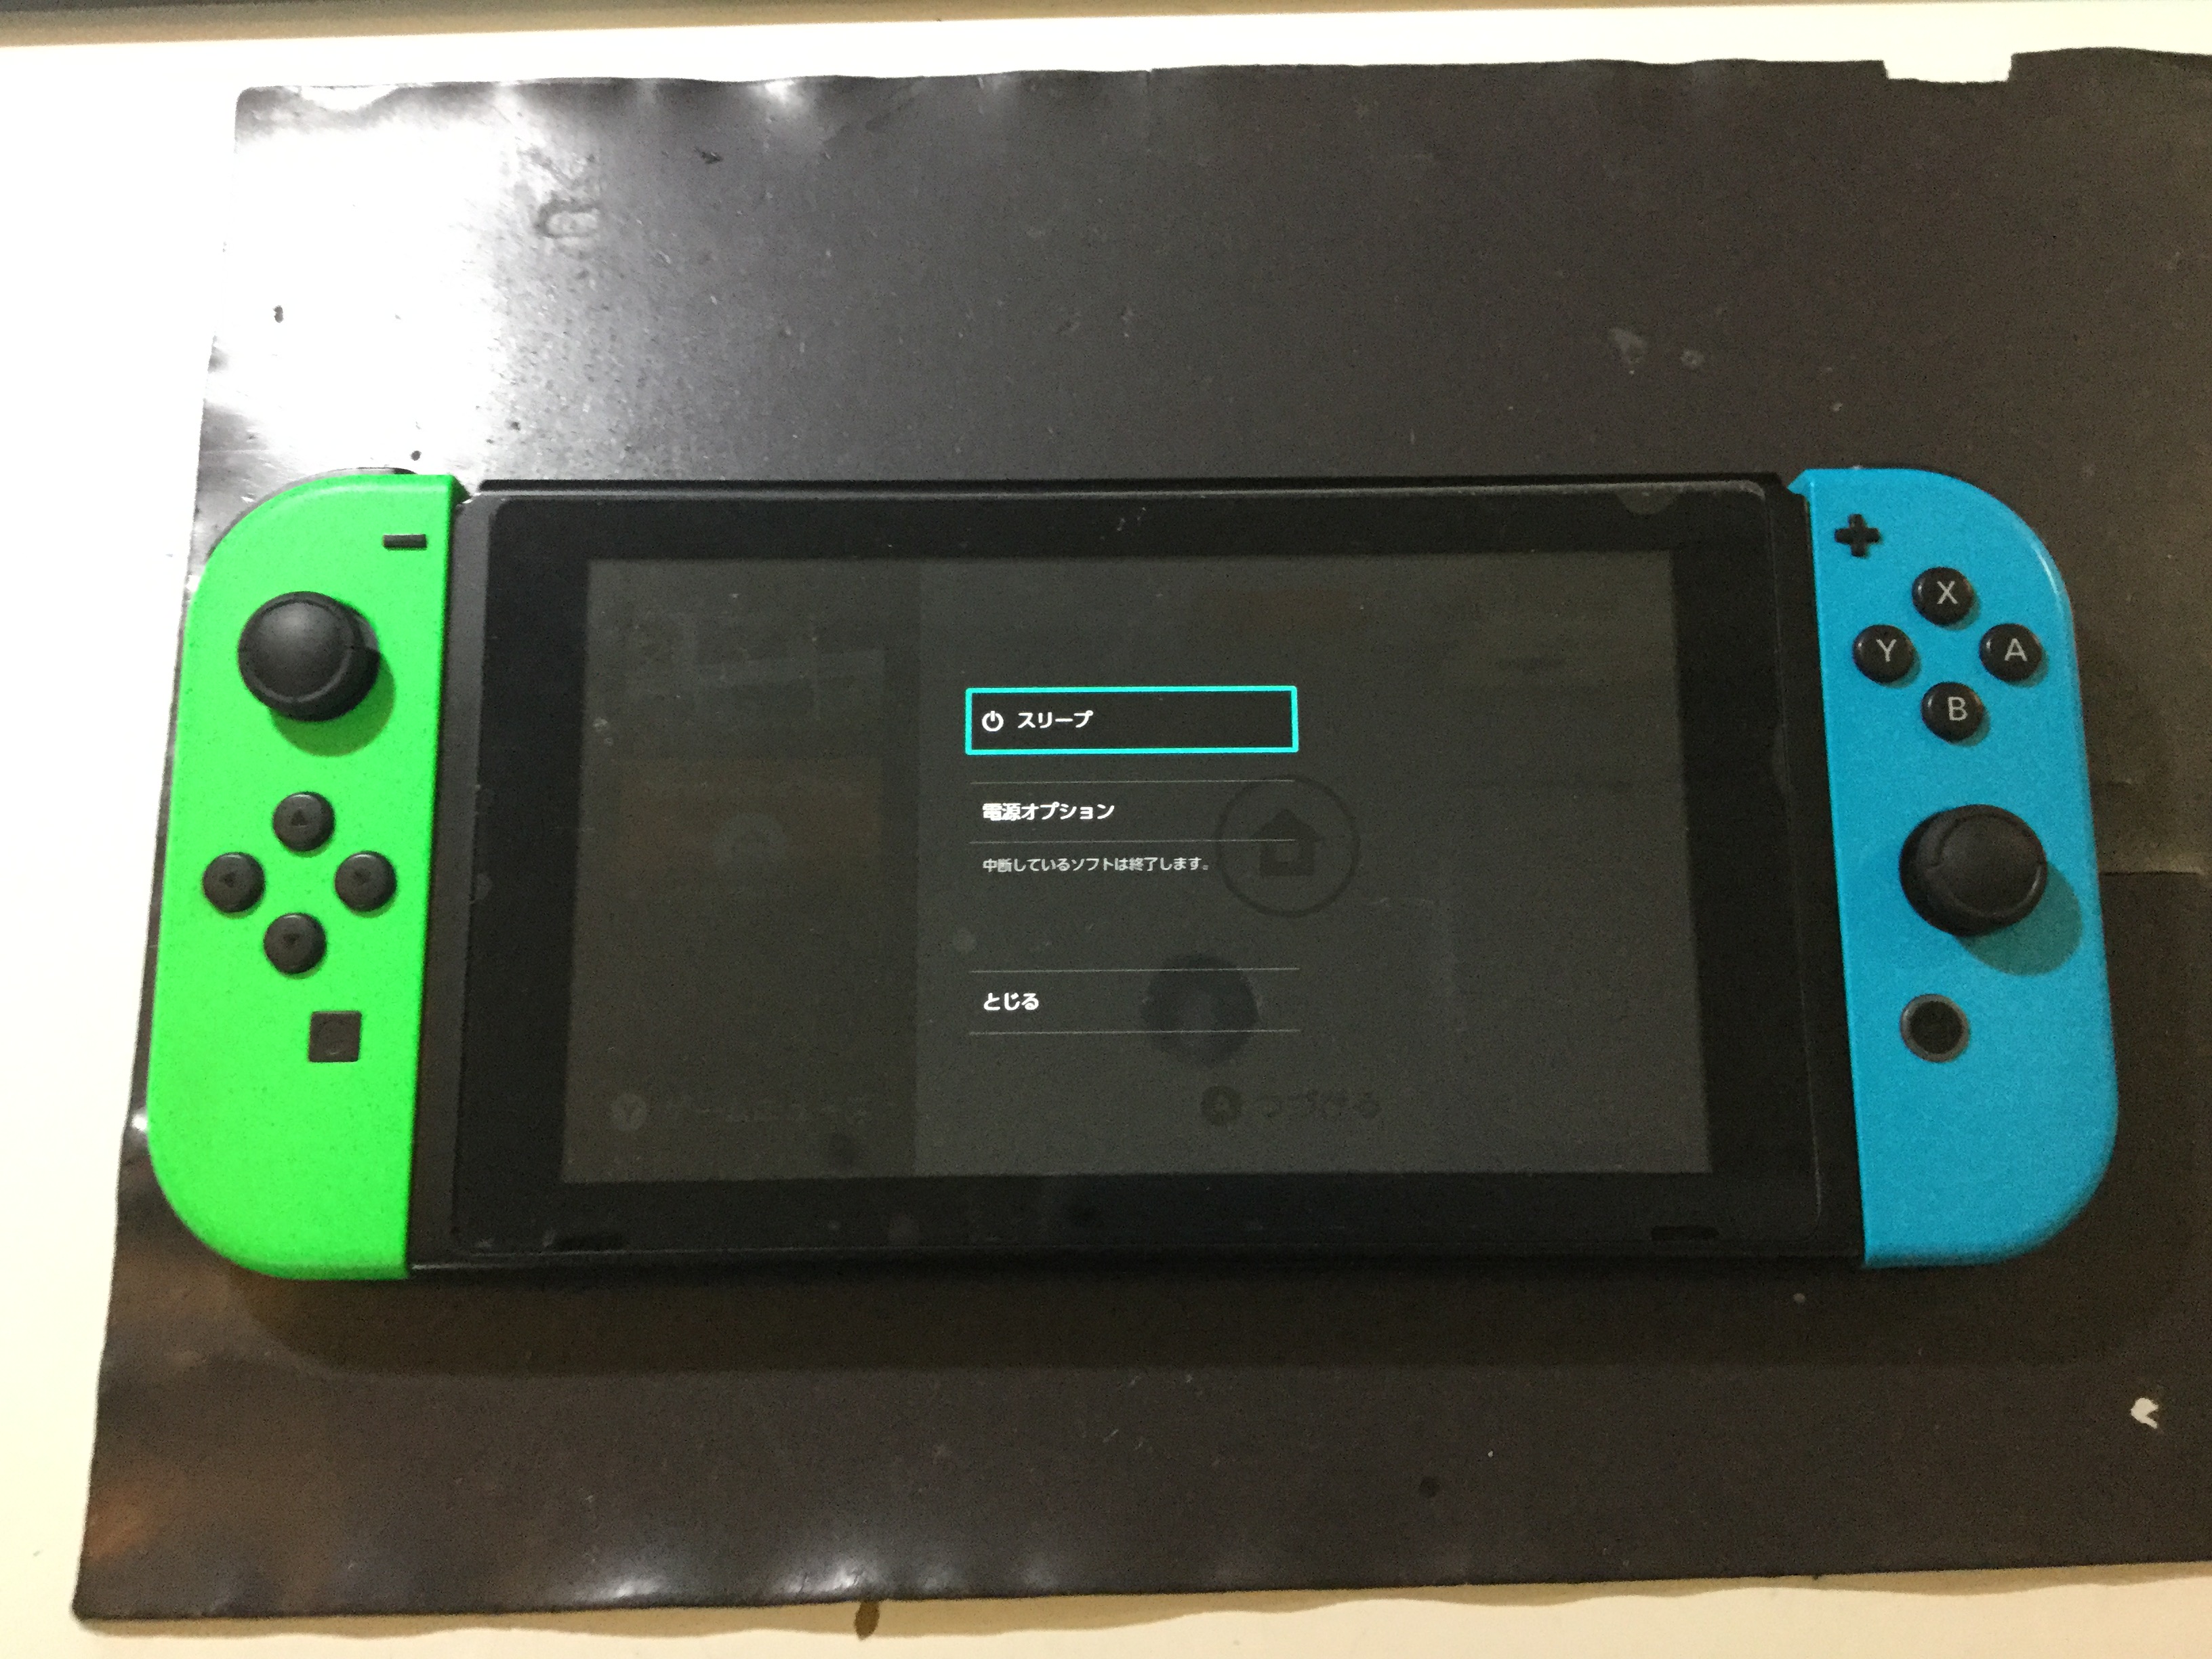 ニンテンドースイッチでエラーコードが出てしまったら Switch Nintendo3ds Psp 修理のゲームホスピタル Switch Nintendo3ds ニンテンドーds Psp 修理